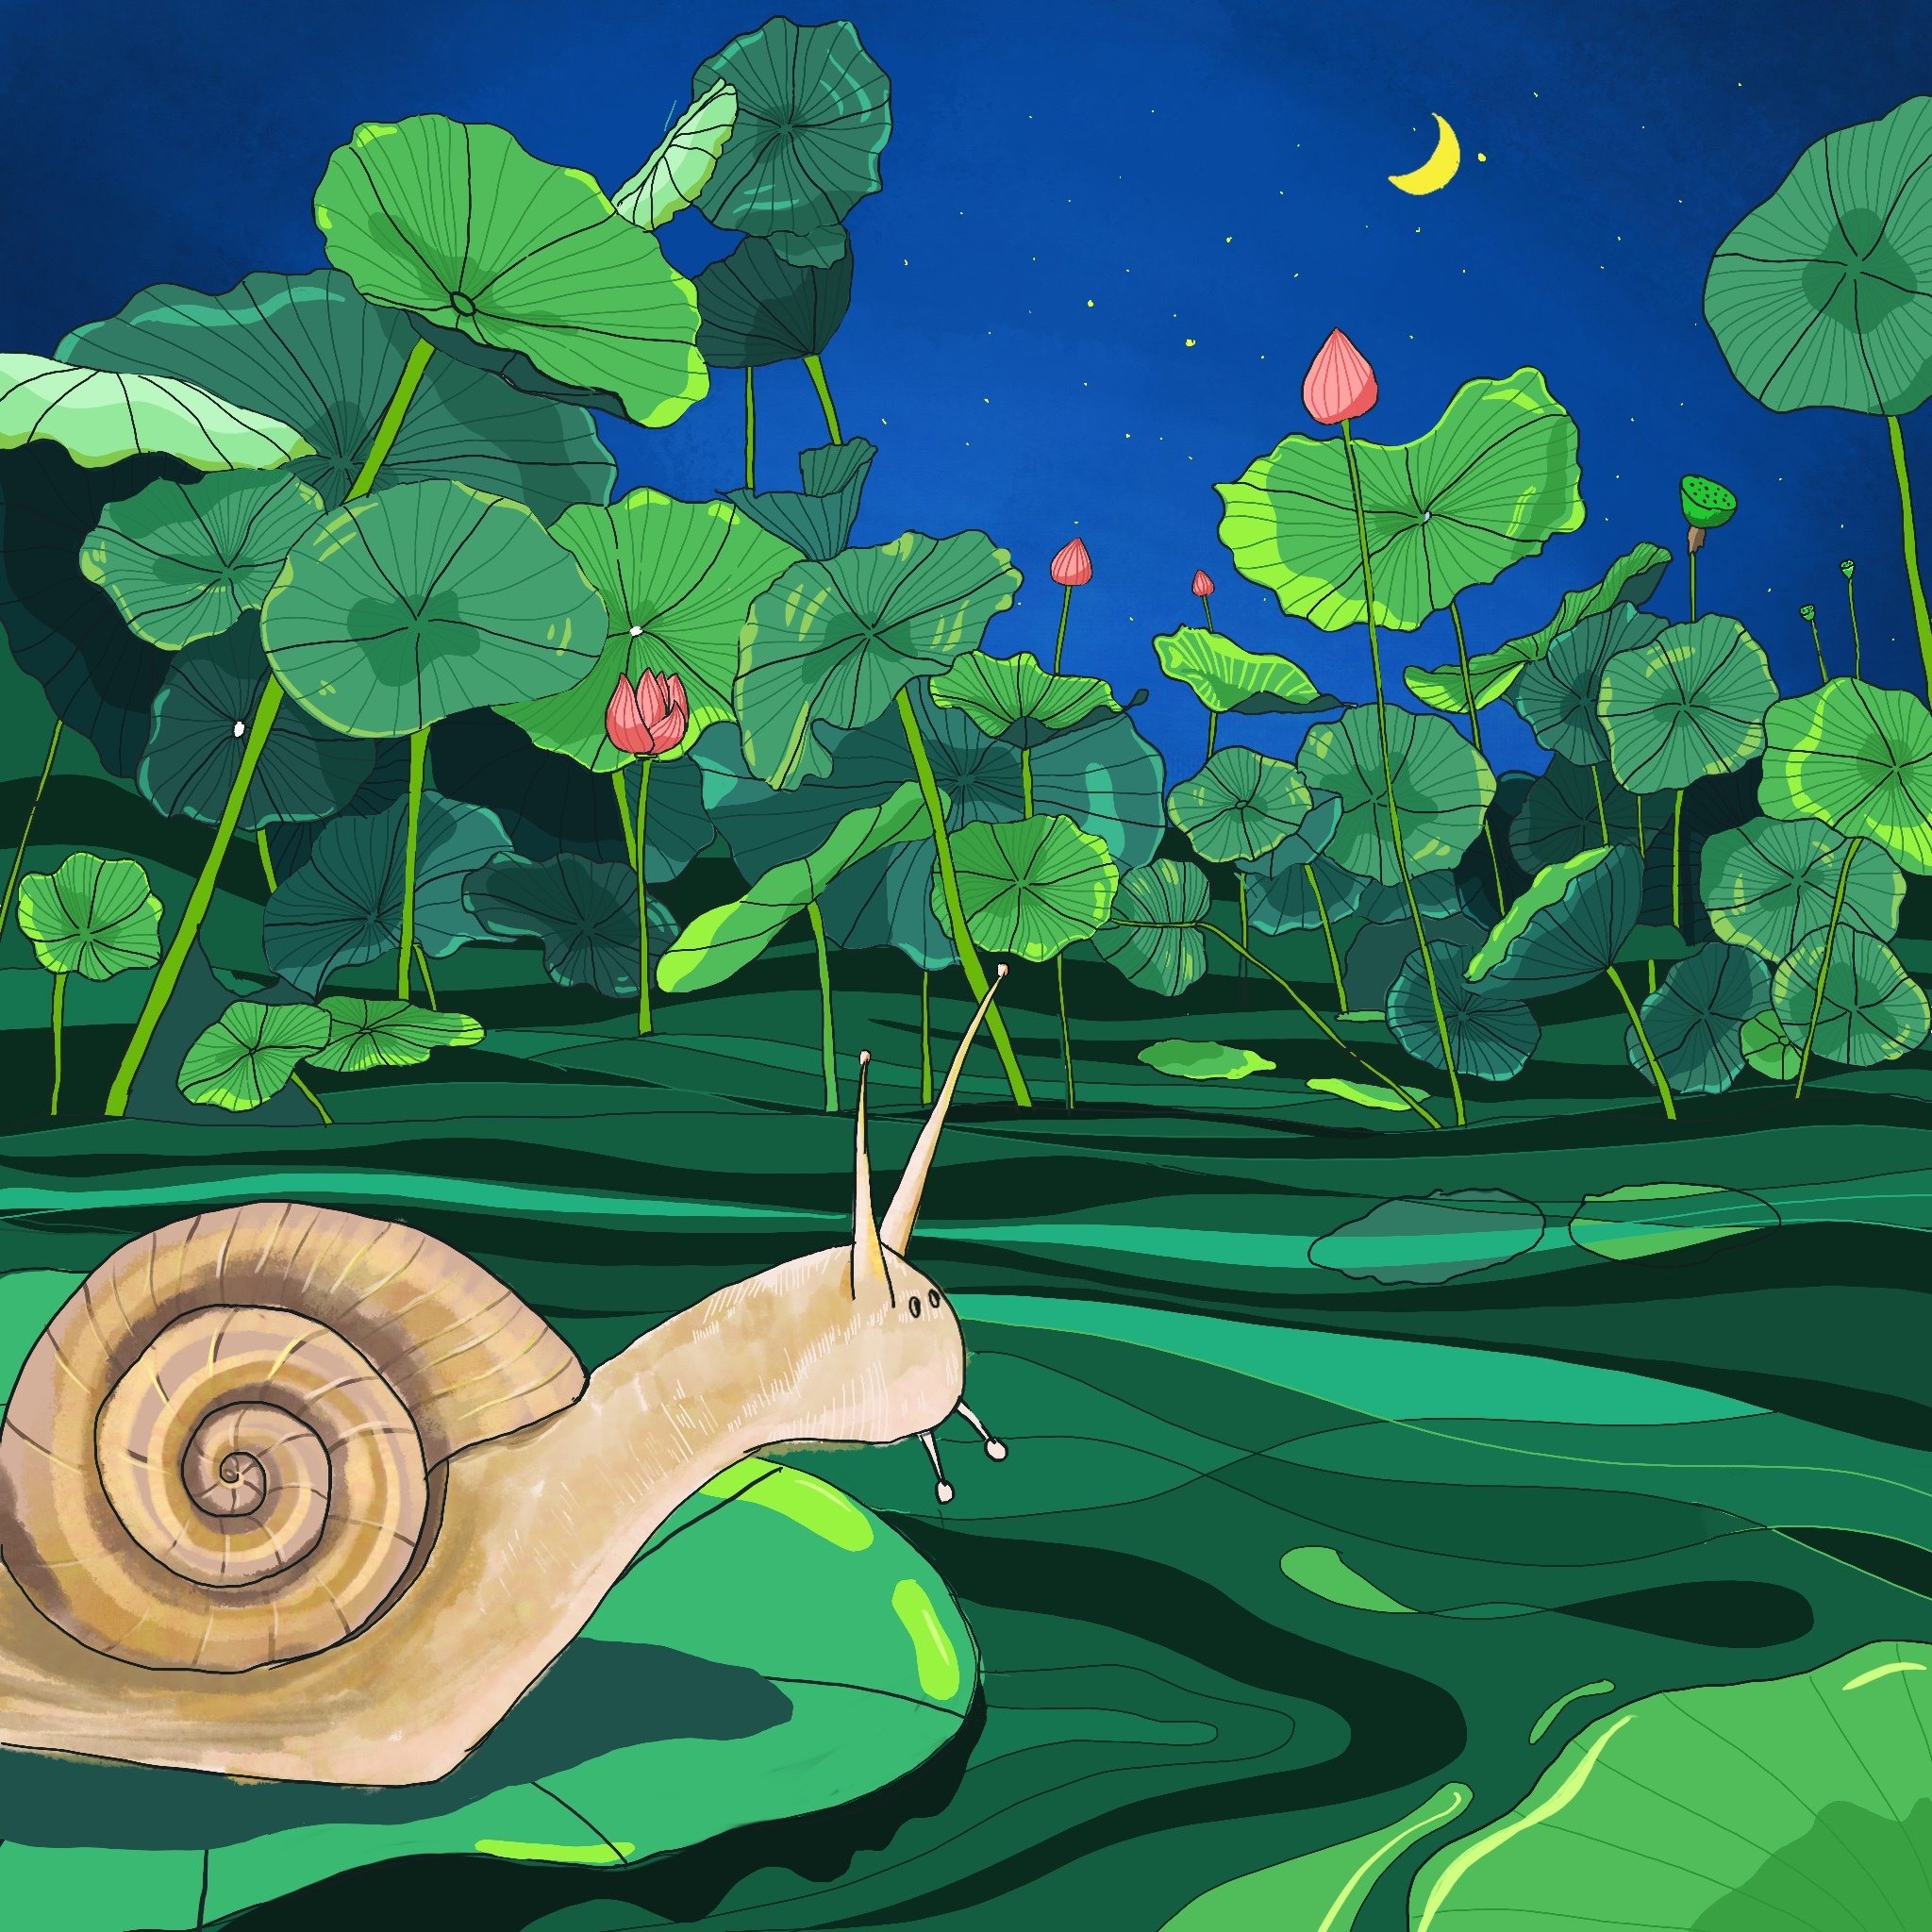 【晚安故事】《小蜗牛的新房子》